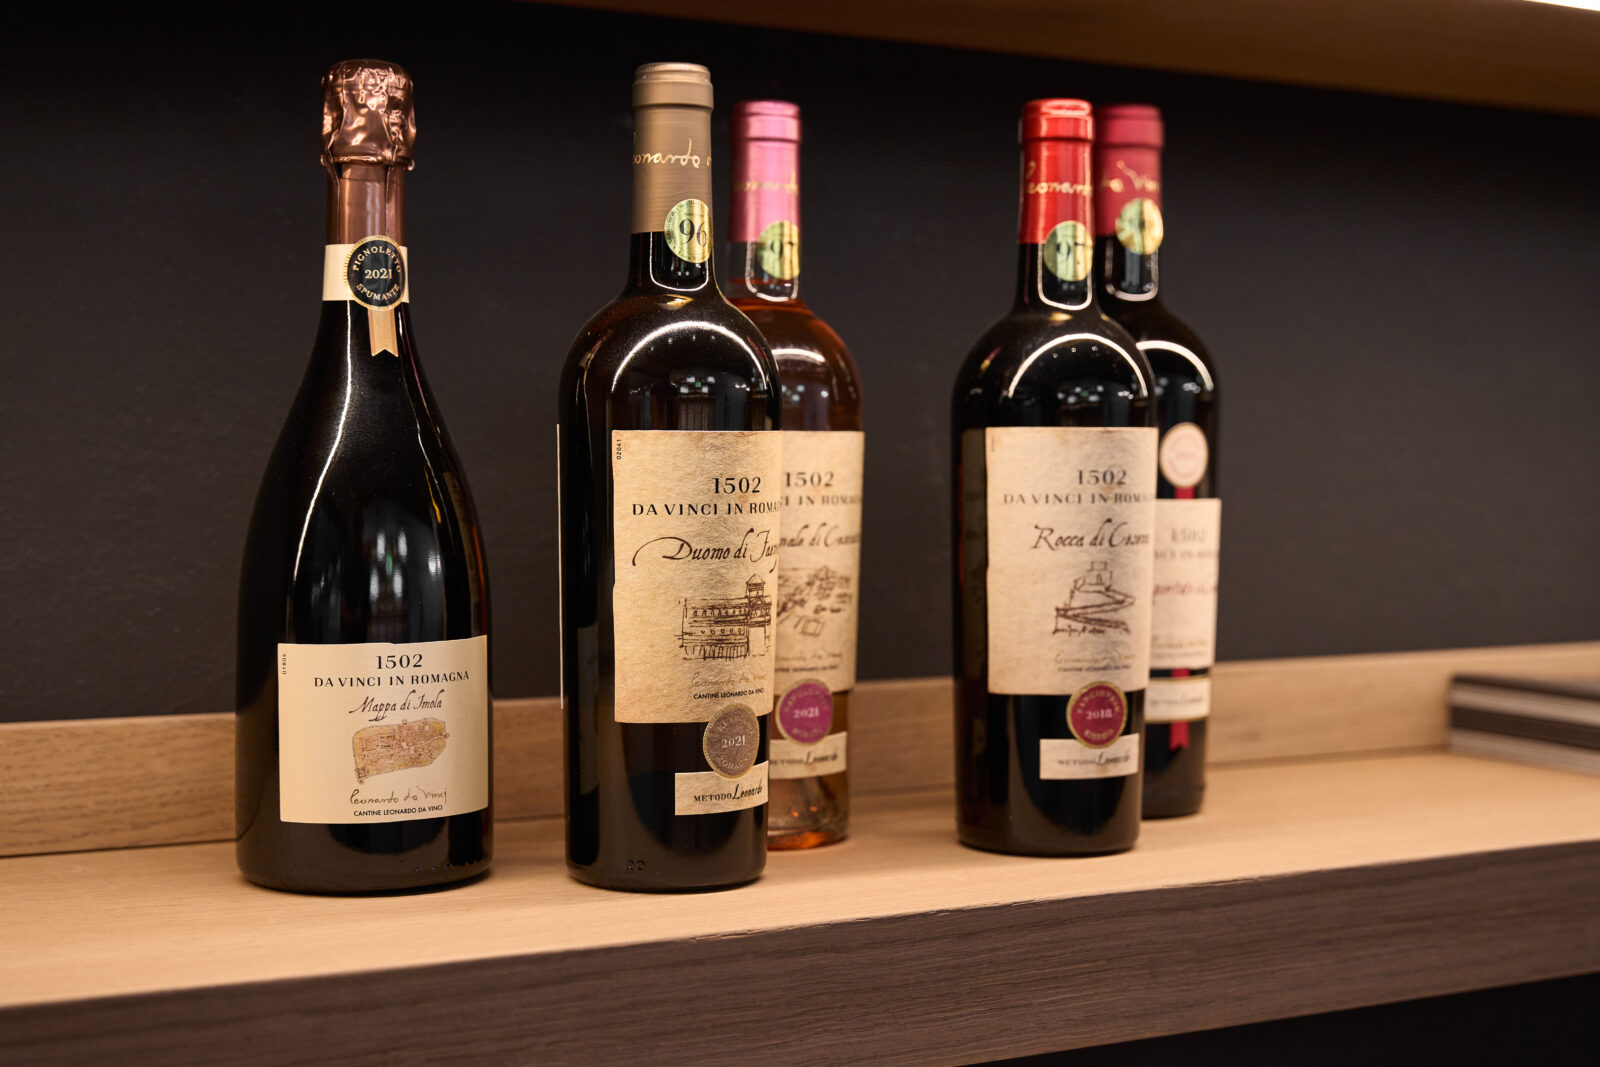 Mensola in legno con sopra cinque bottiglie di vino nella galleria che ospita la mostra dedicata a leonardo da vinci e il suo rapporto con il vino, realizzata da ett